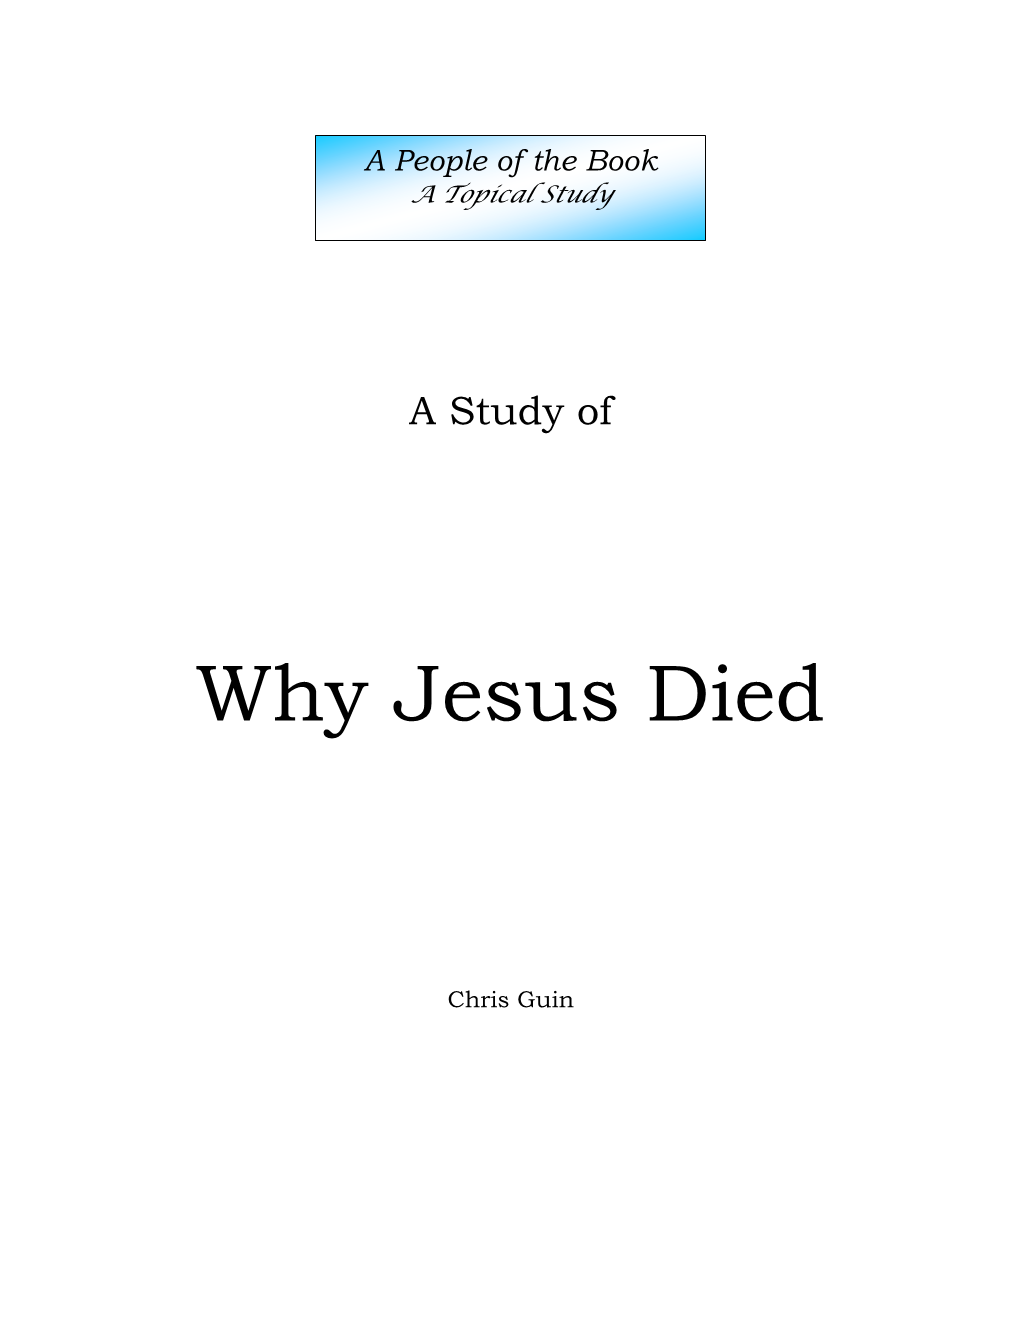 Why Jesus Died